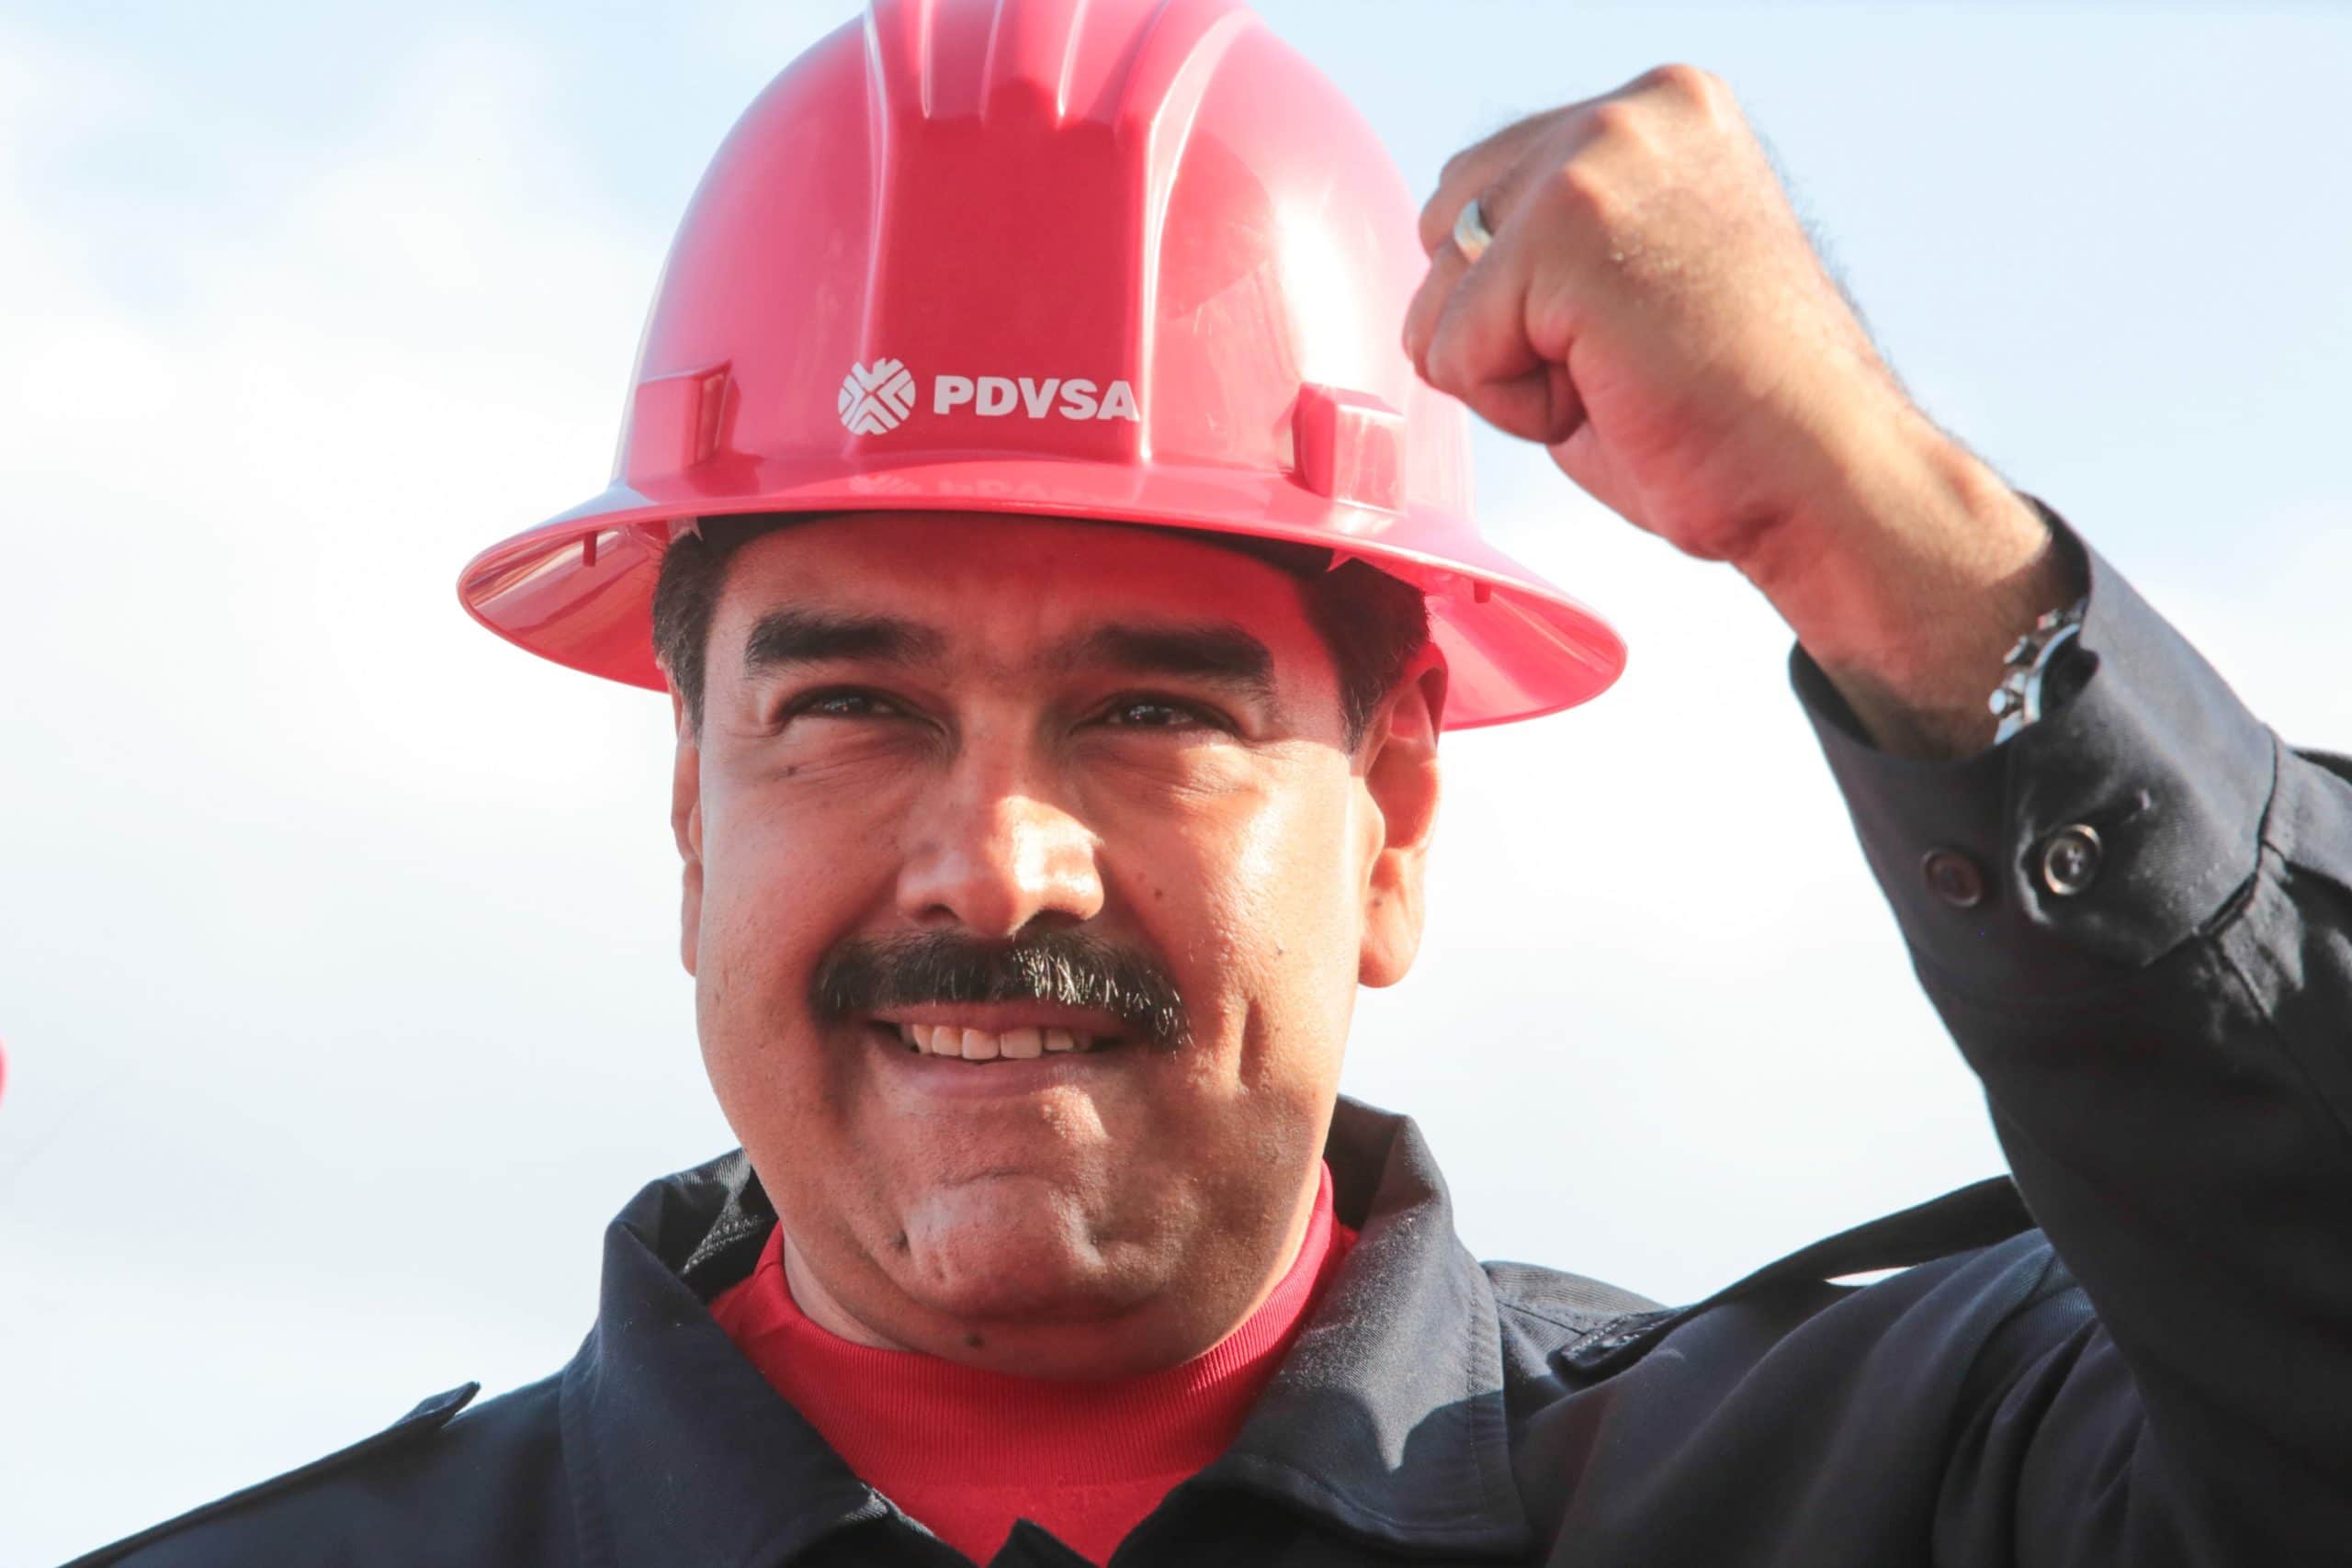 ANÁLISIS: ¿Está PDVSA capacitada para cumplir los ambiciosos objetivos de Maduro?